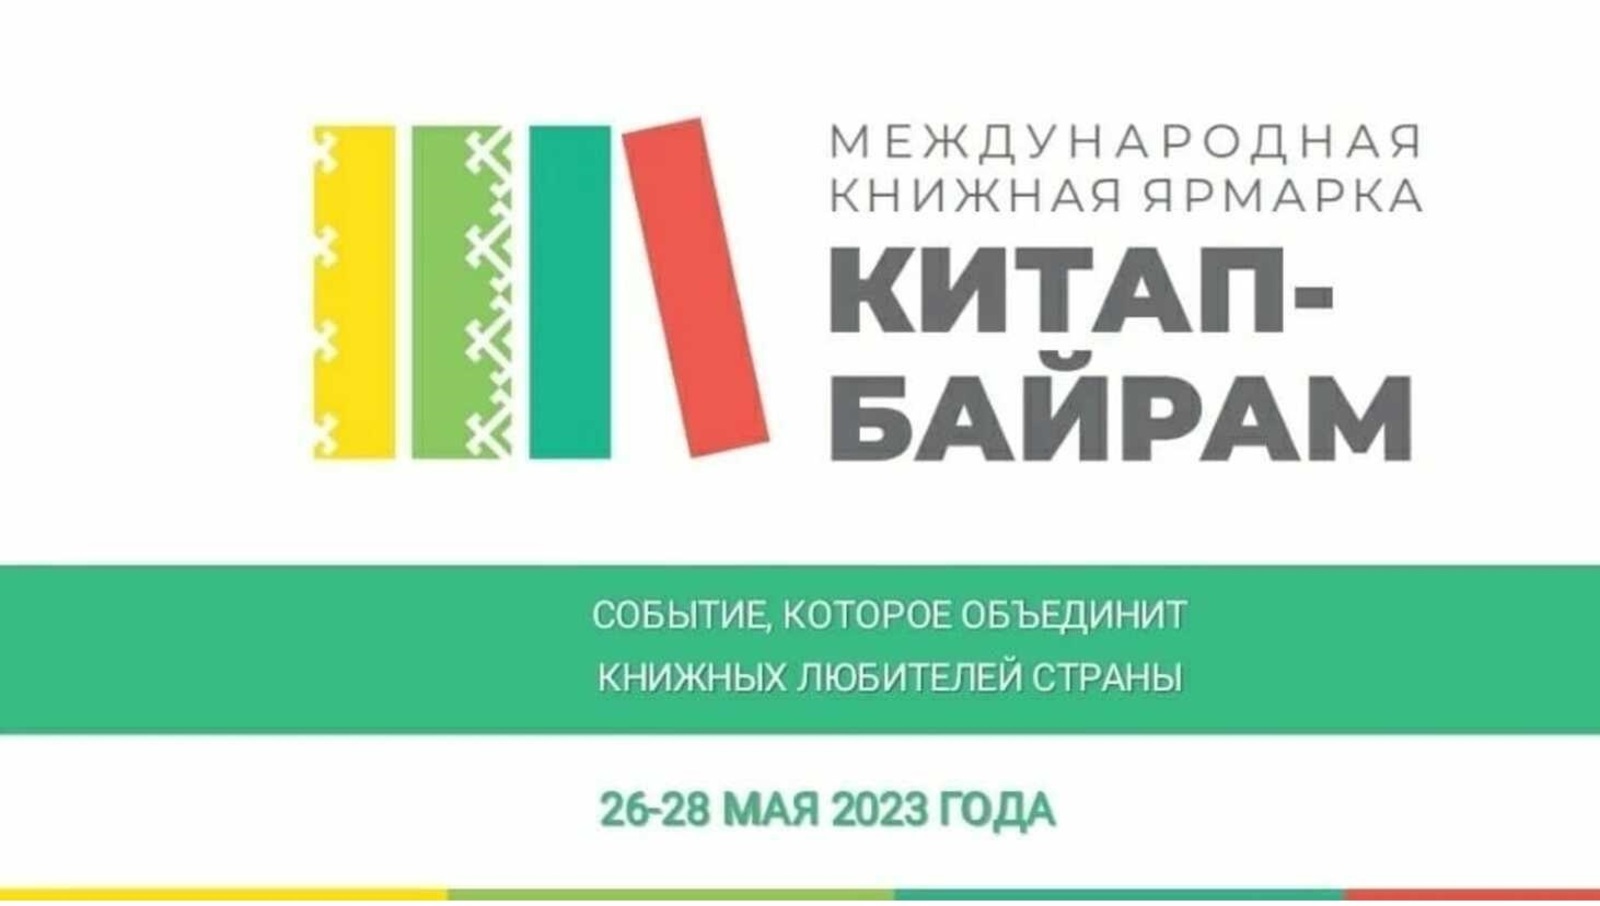 В Башкирии пройдет конкурс издательств